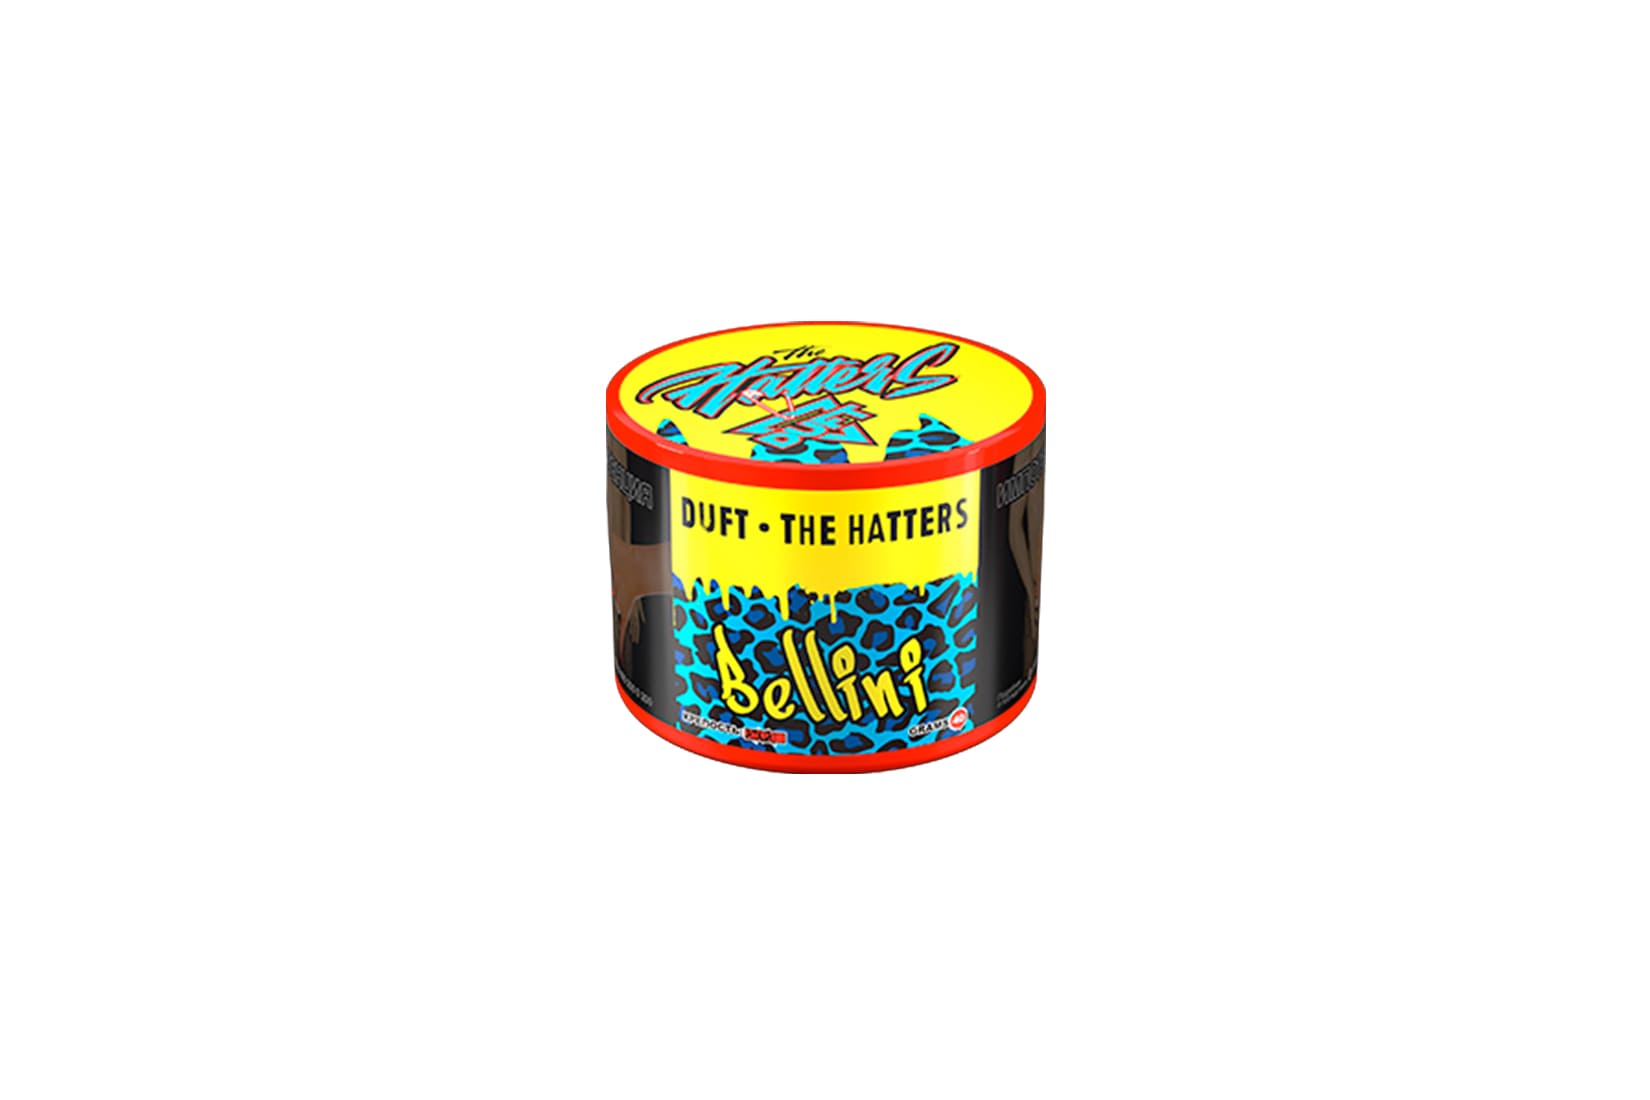 Табак для кальяна DUFT X THE HATTERS BELLINI – описание, миксы, отзывы